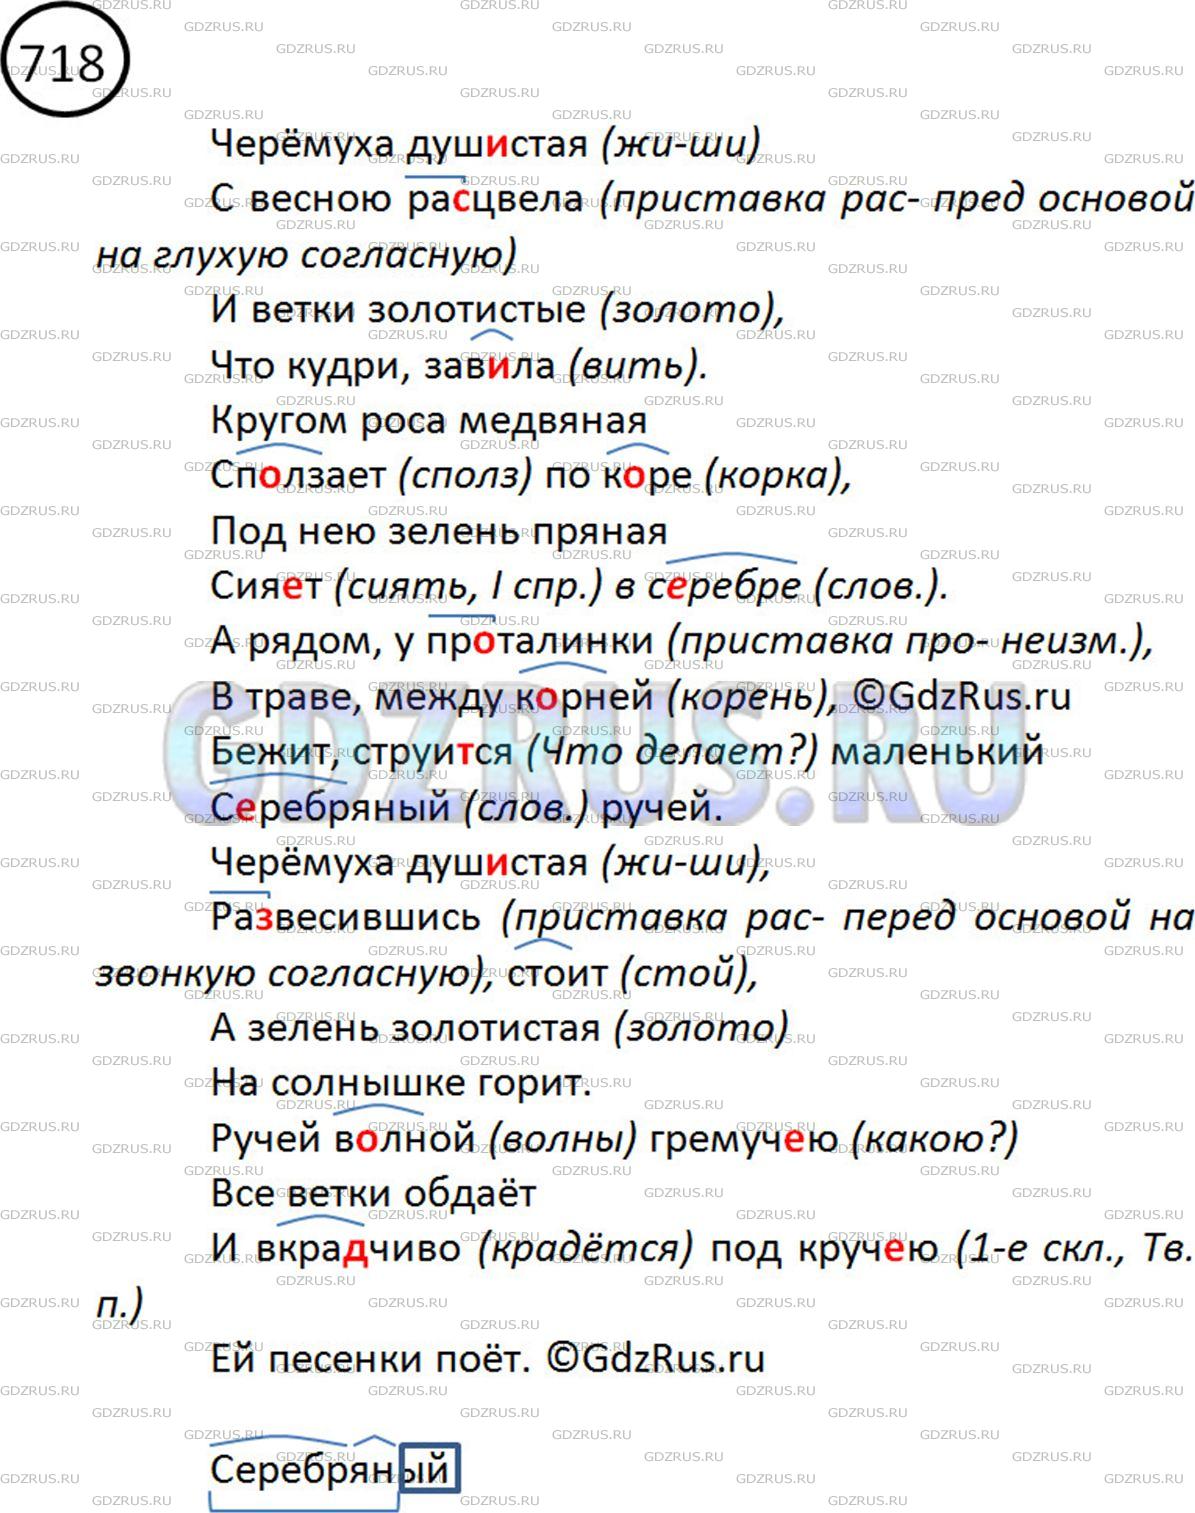 Фото решения 2: ГДЗ по Русскому языку 5 класса: Ладыженская Упр. 718